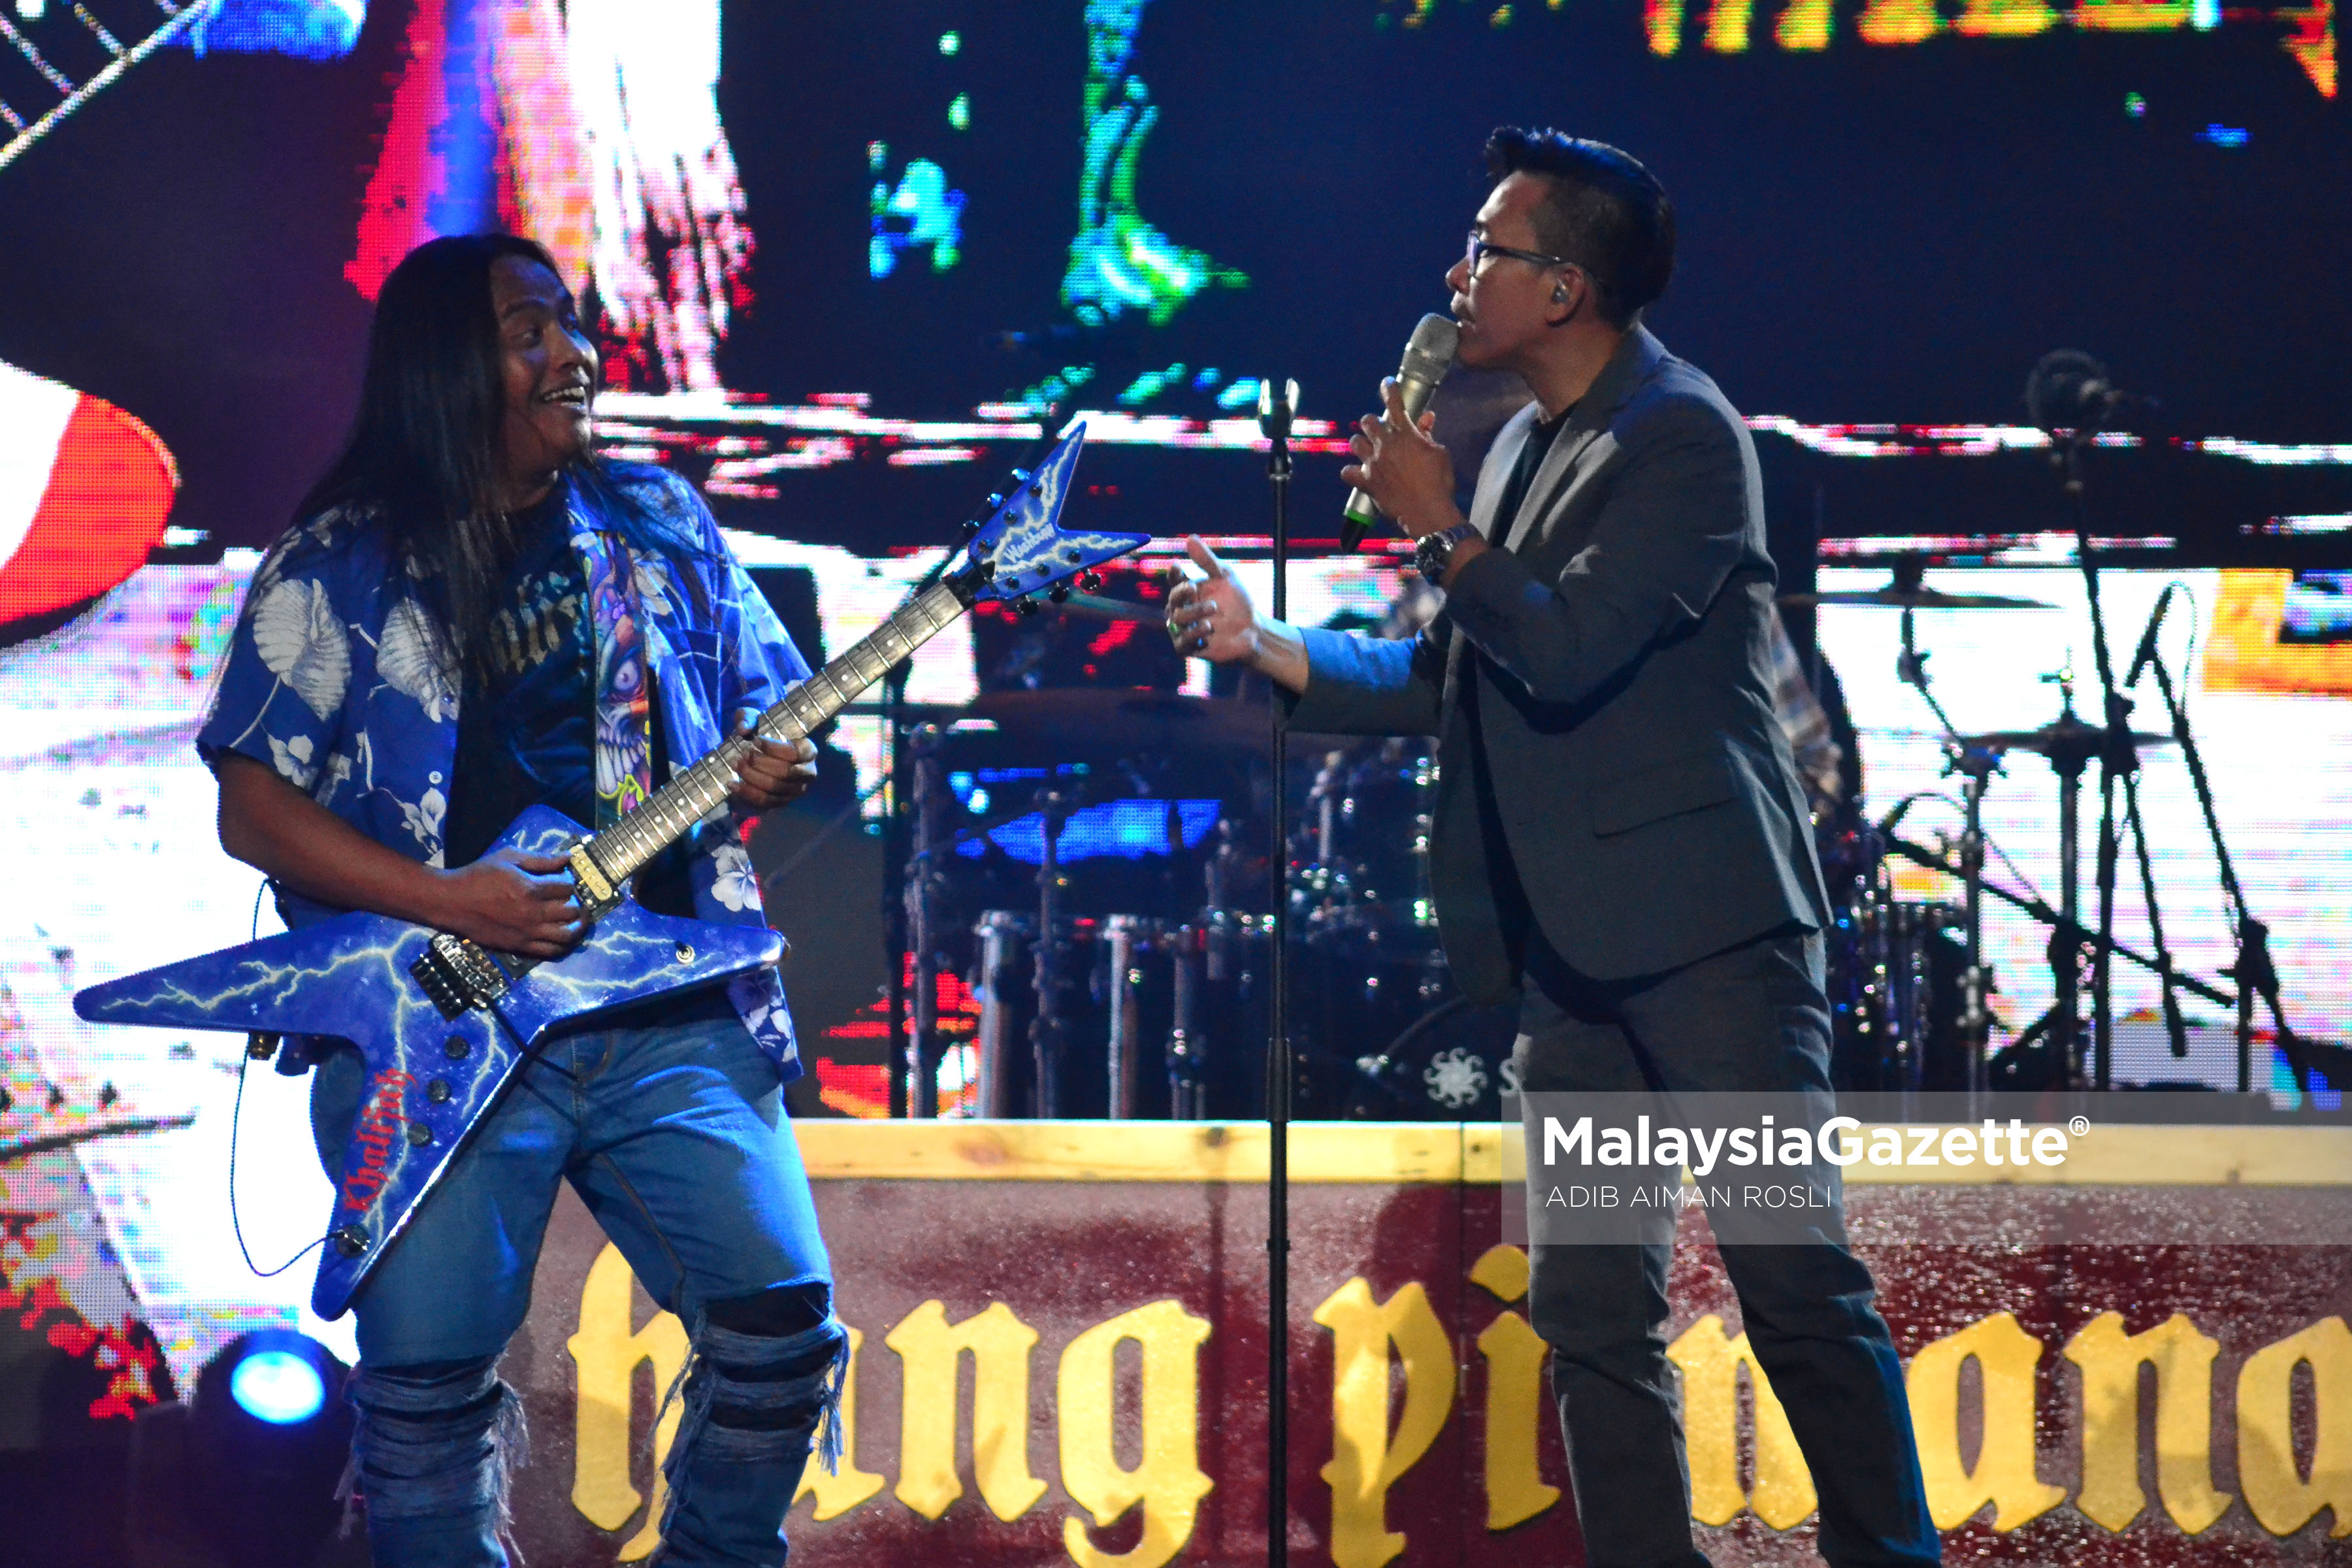 Gelagat kumpulan Khalifa ketika melakukan persembahan nyanyian pada malam Anugerah Juara Lagu KE 31 di Pusat Dagangan Dunia Putra, Kuala Lumpur. foto ADIB AIMAN ROSLI, 22 JANUARI 2017